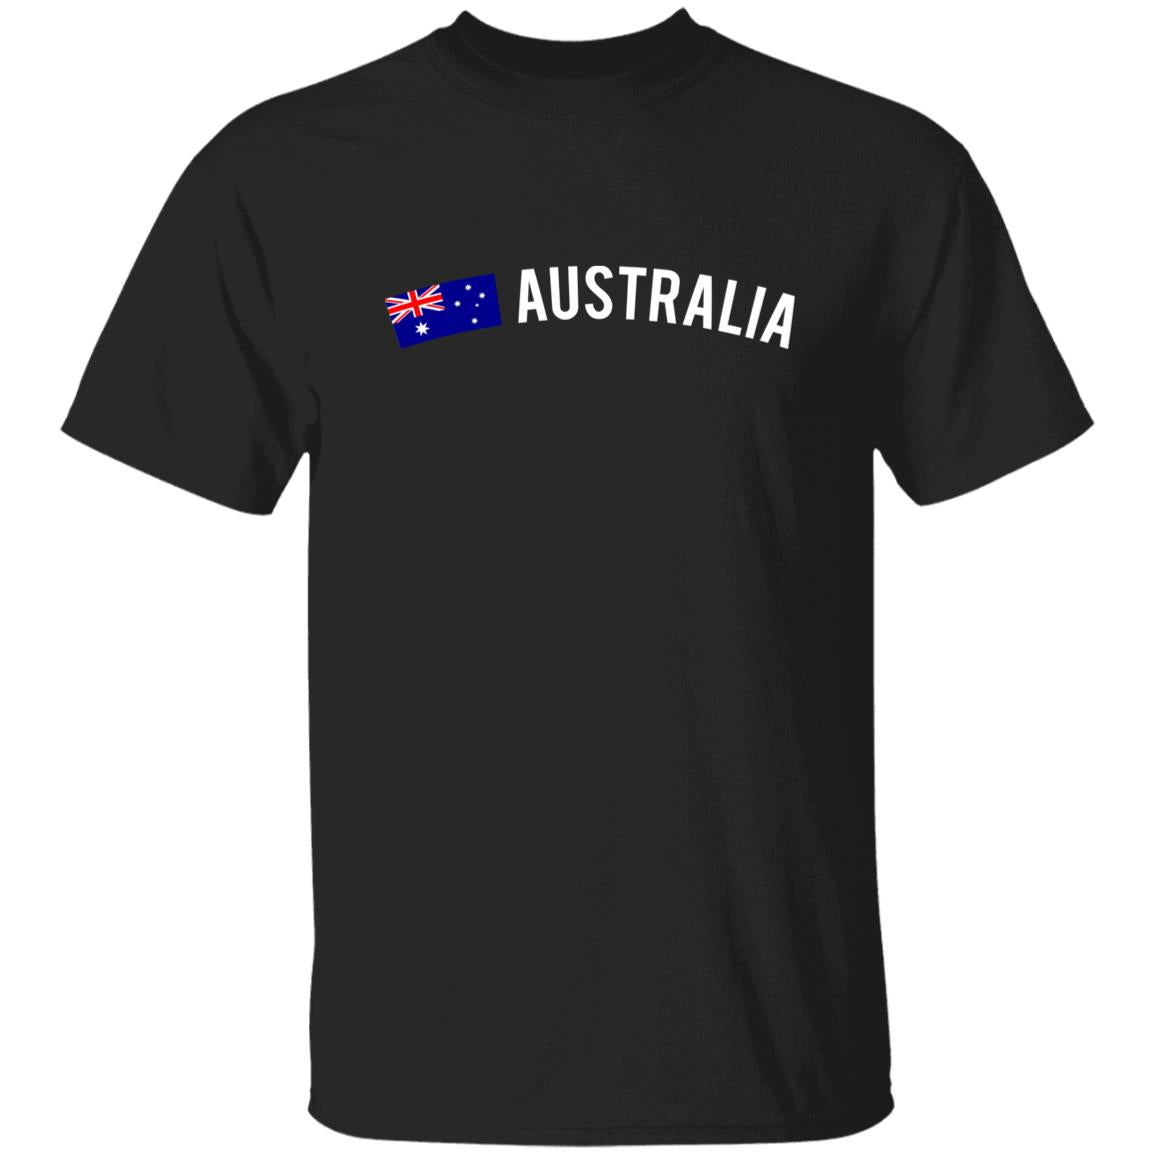 Australia Unisex T-shirt gift Australian flag tee Sydney White Black Dark Heather-Family-Gift-Planet